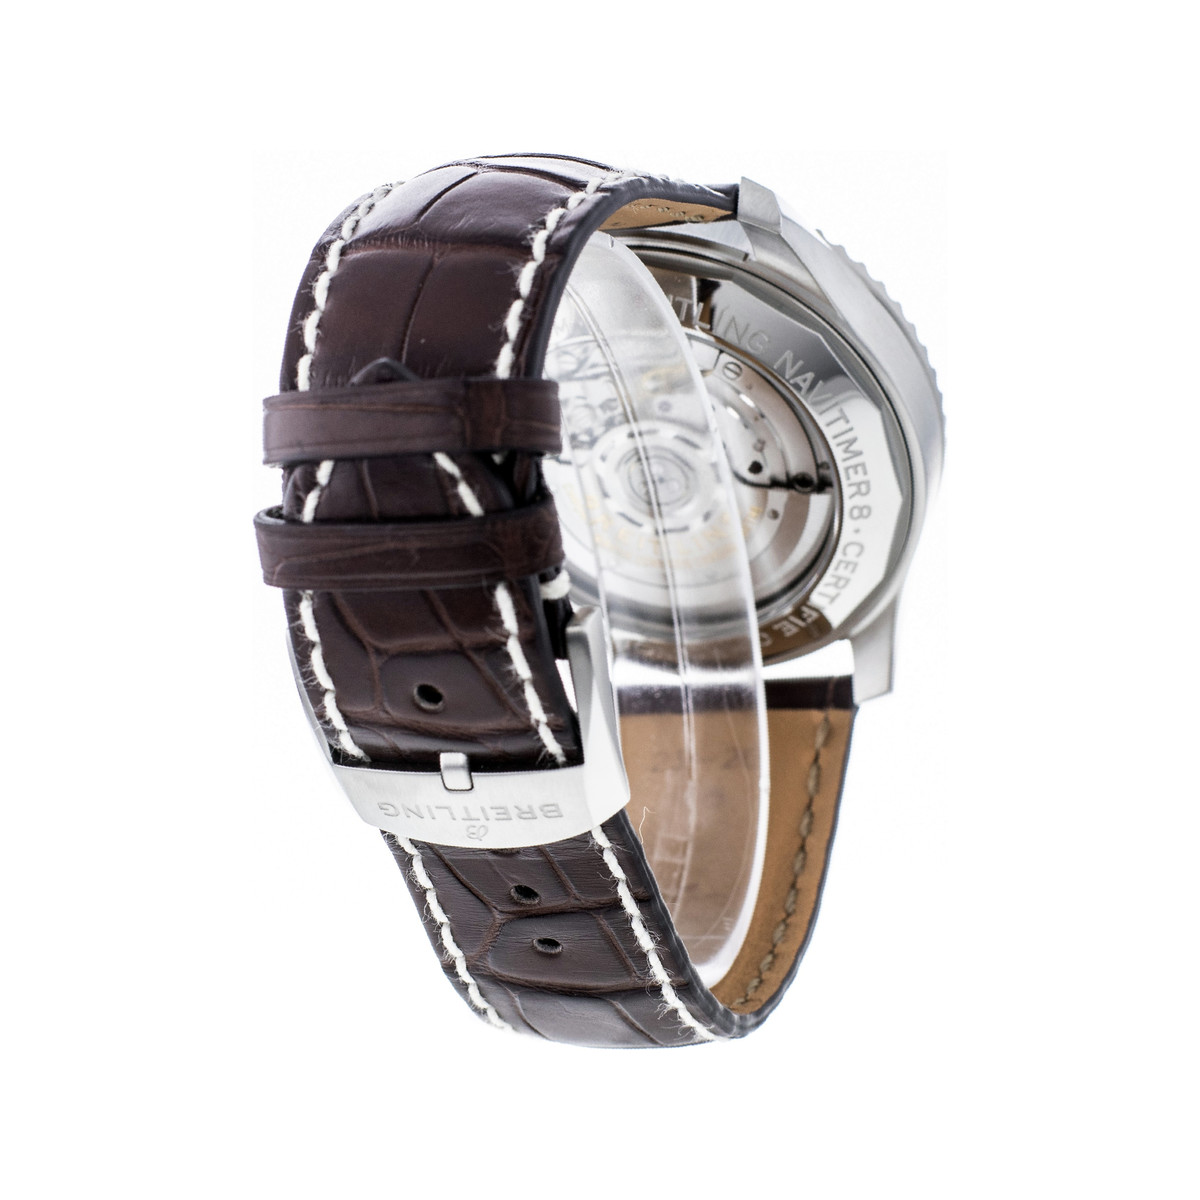 Montre d'occasion Breitling Navitimer homme chronographe automatique acier bracelet cuir marron - vue 3